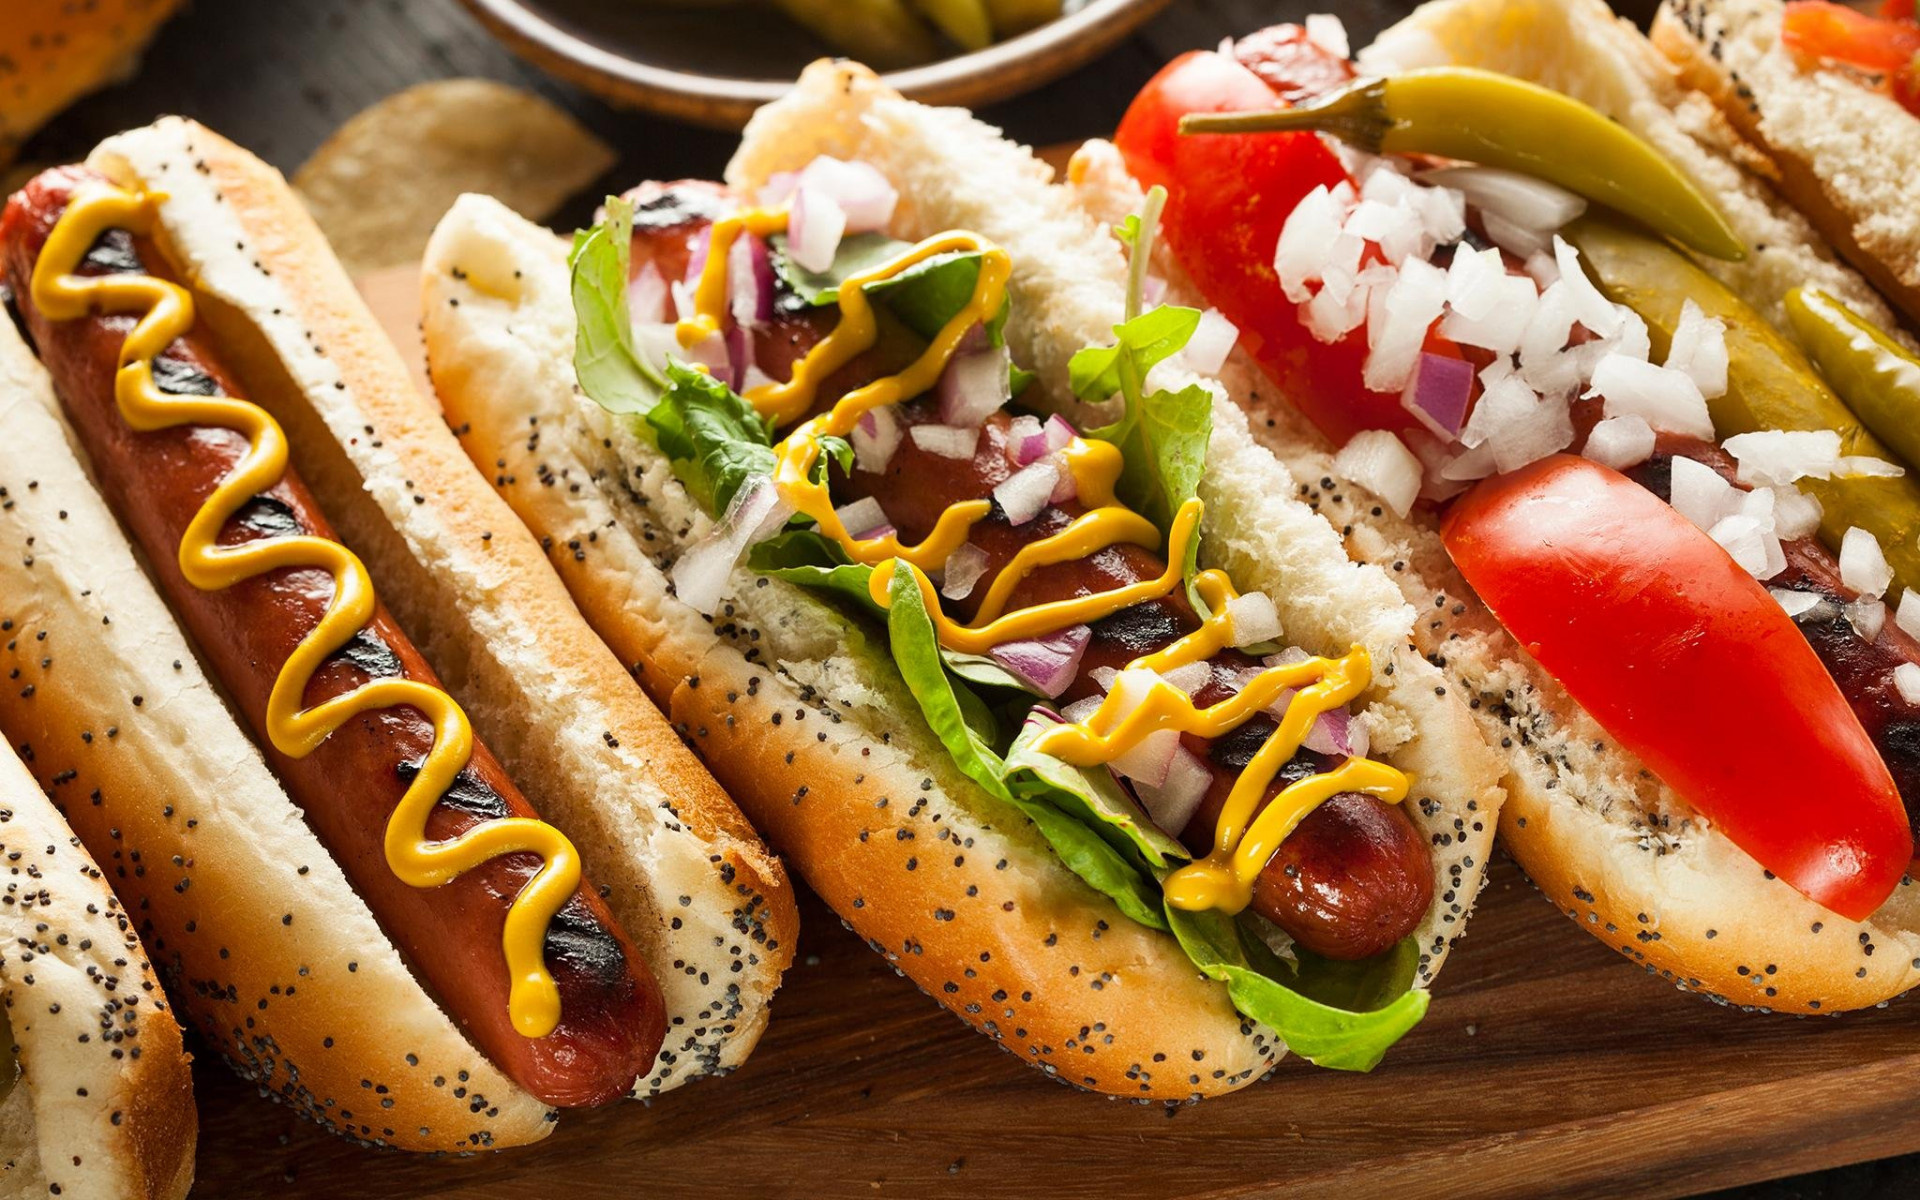 Hot dog wallpaper, Crispy onions, Mustard drizzle, Appetizing snack, 1920x1200 HD Desktop